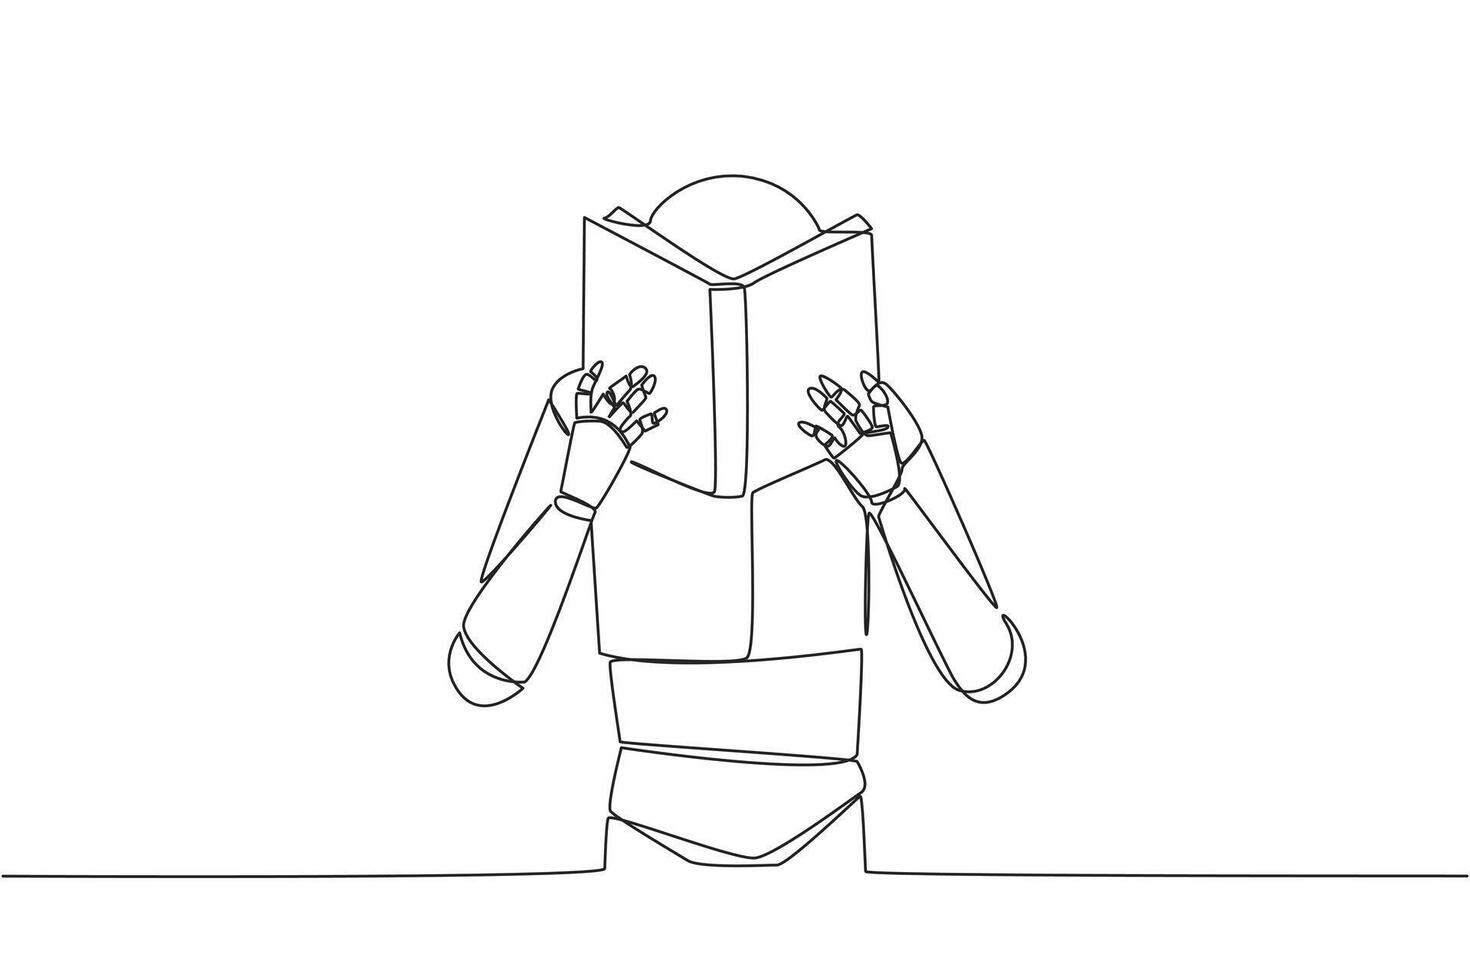 contínuo 1 linha desenhando robô a sério lendo livro até cobrir a face. nervoso quando voltado para a final exames. experimentar para foco. lendo aumentar entendimento. solteiro linha desenhar Projeto ilustração vetor